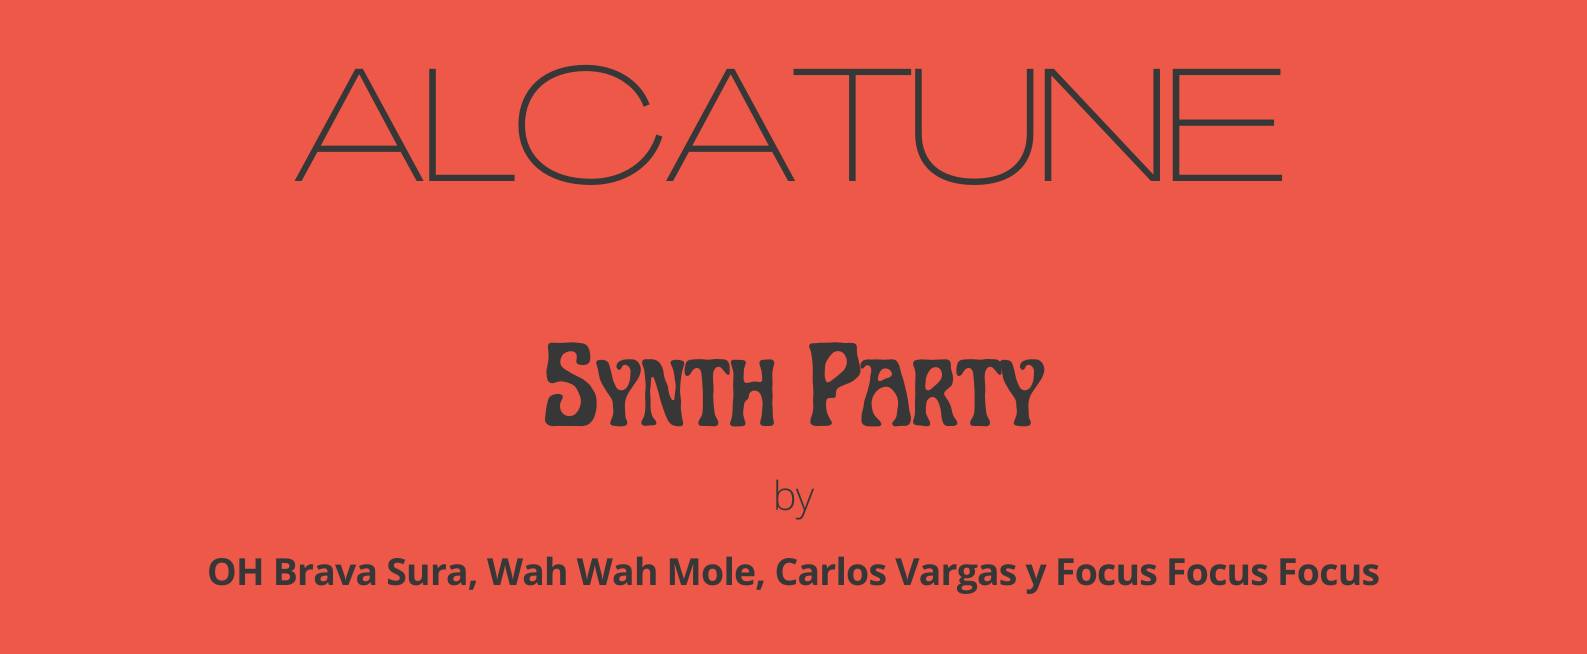 ALCATUNE + Synth Party by OH Brava Sura, Wah Wah Mole, Carlos Vargas y Focus Focus Focus | Chat Noir